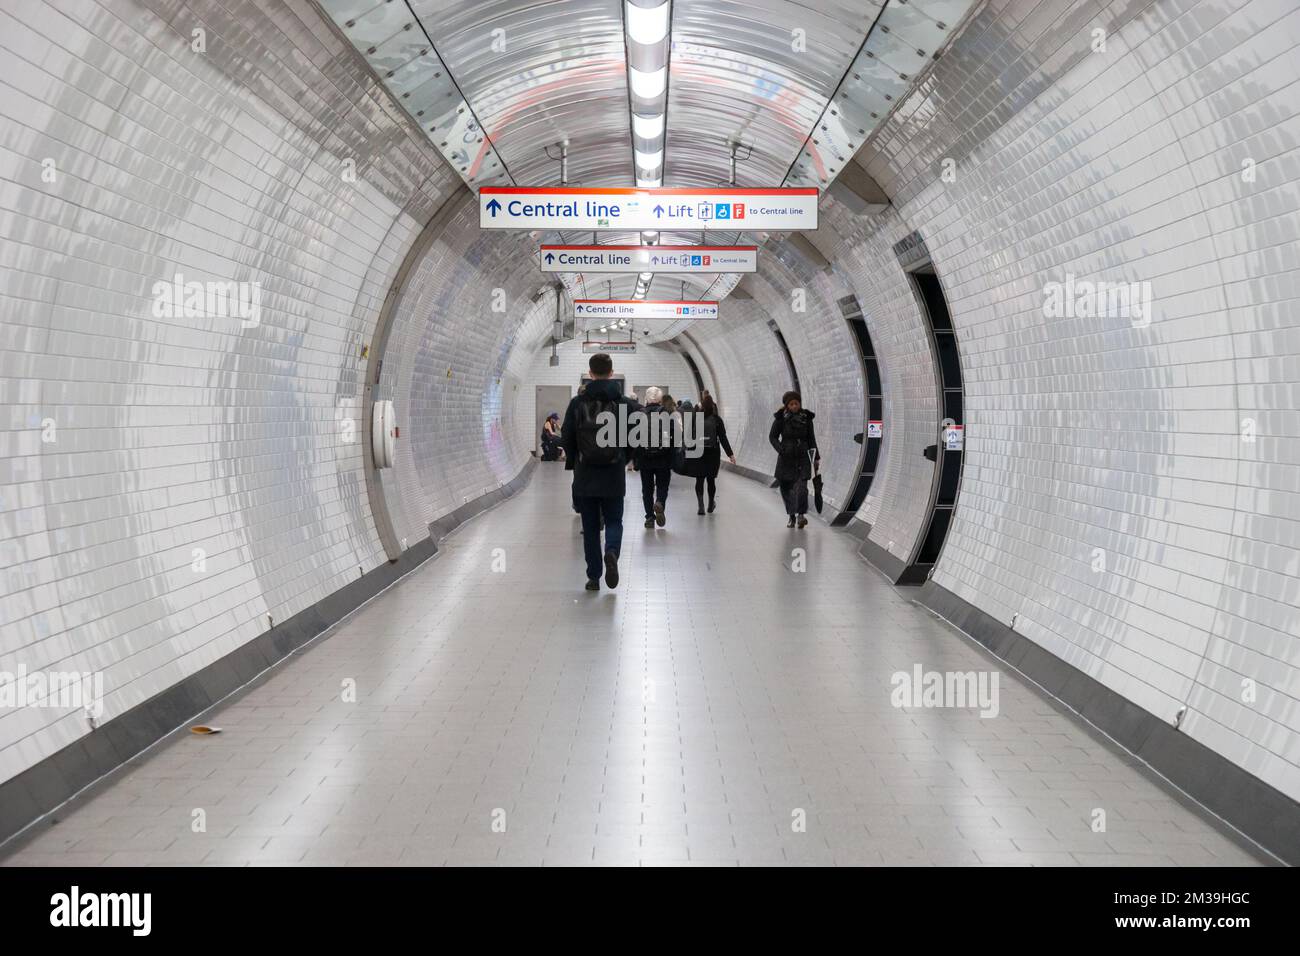 Ligne centrale de métro ou tunnel de métro, Londres, Royaume-Uni. Passagers marchant vers la plate-forme Banque D'Images